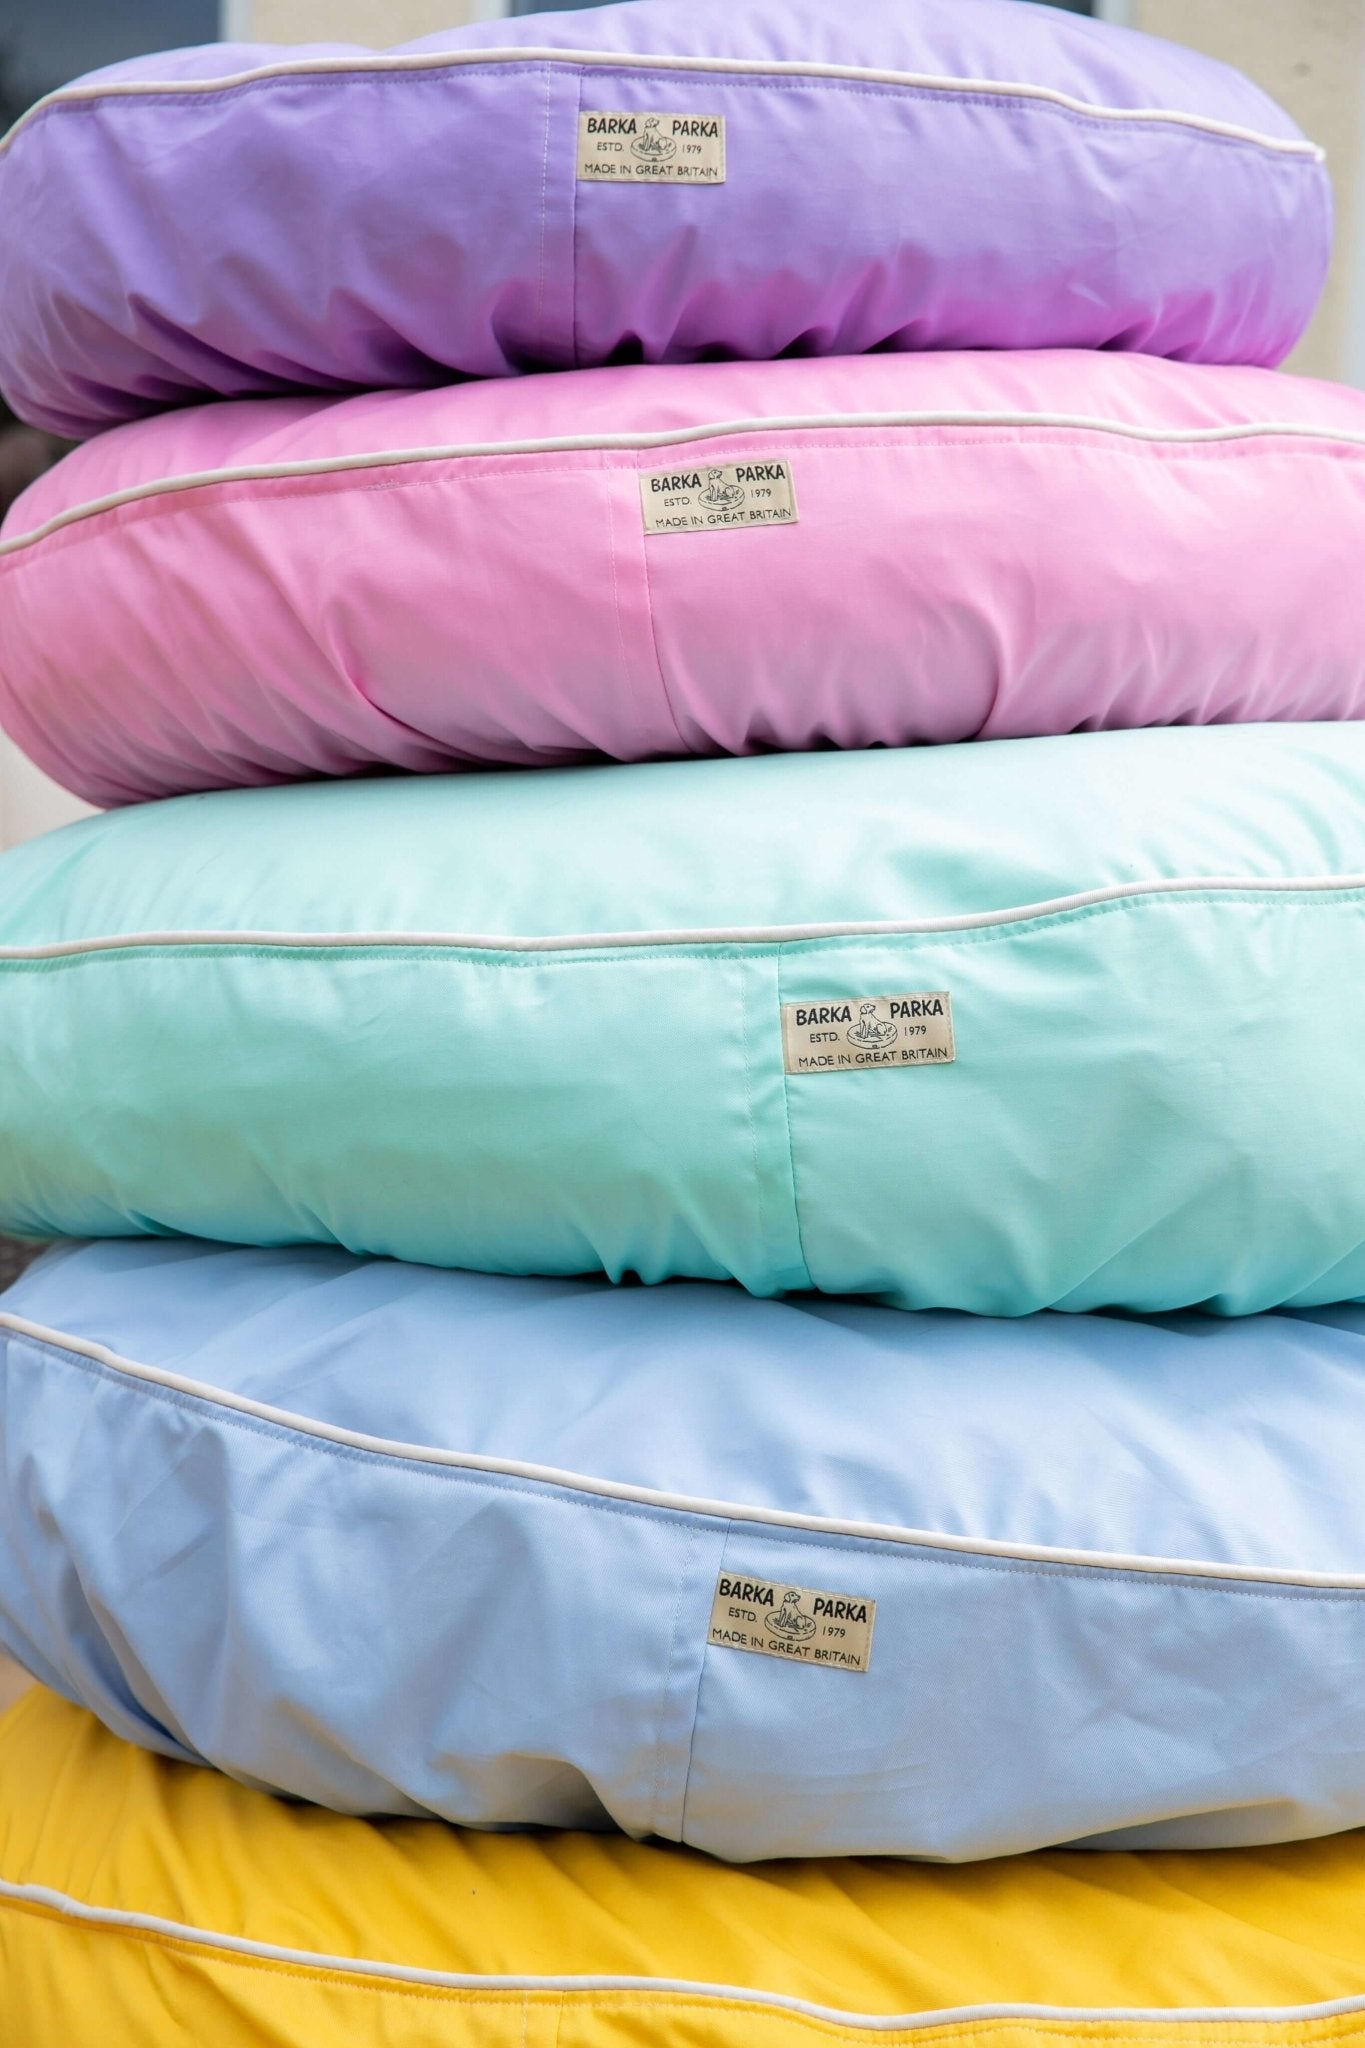 Barka Parka Dog Bed - Pastel blue and cream - Barka Parka Dog Beds